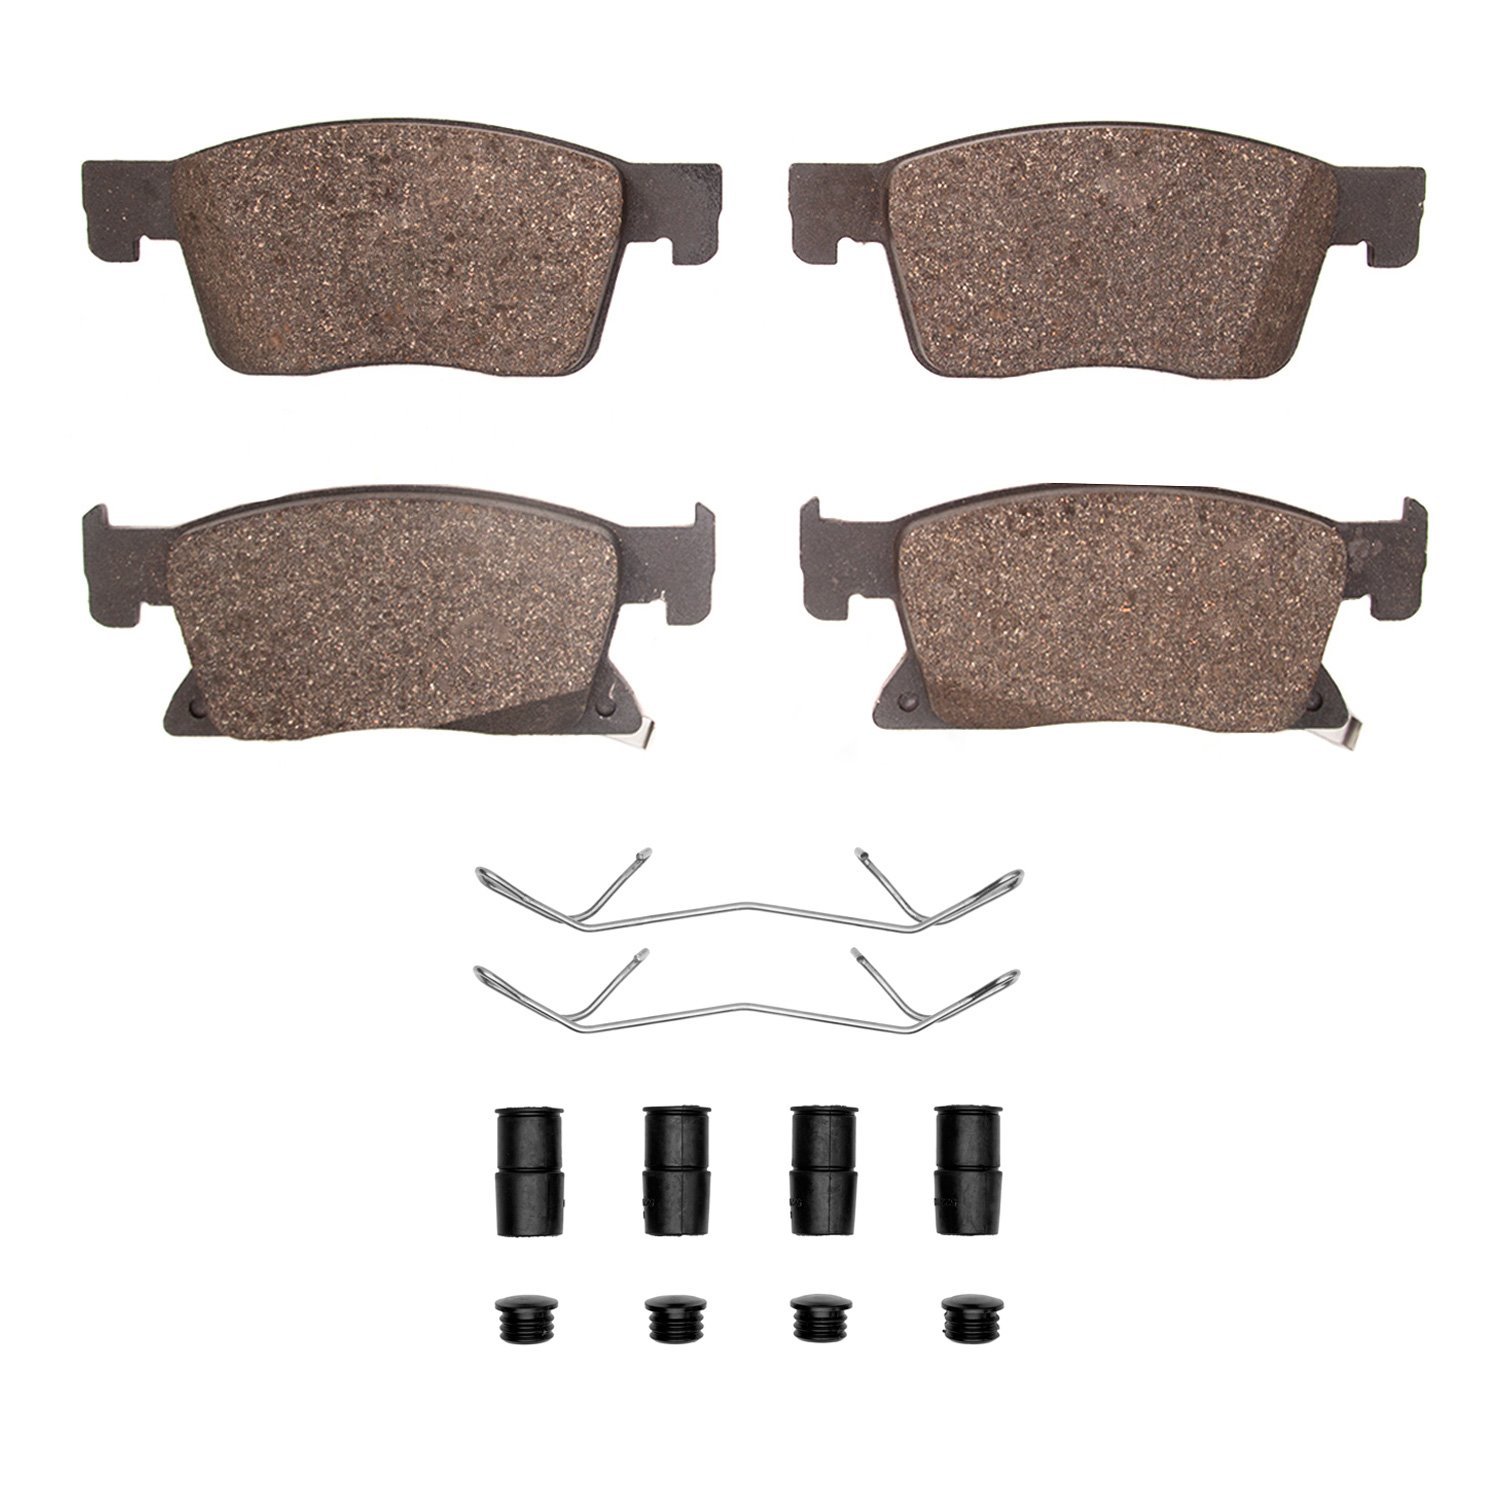 1310-2127-01 3000-Series Ceramic Brake Pads & Hardware Kit, 2016-2019 GM, Position: Front